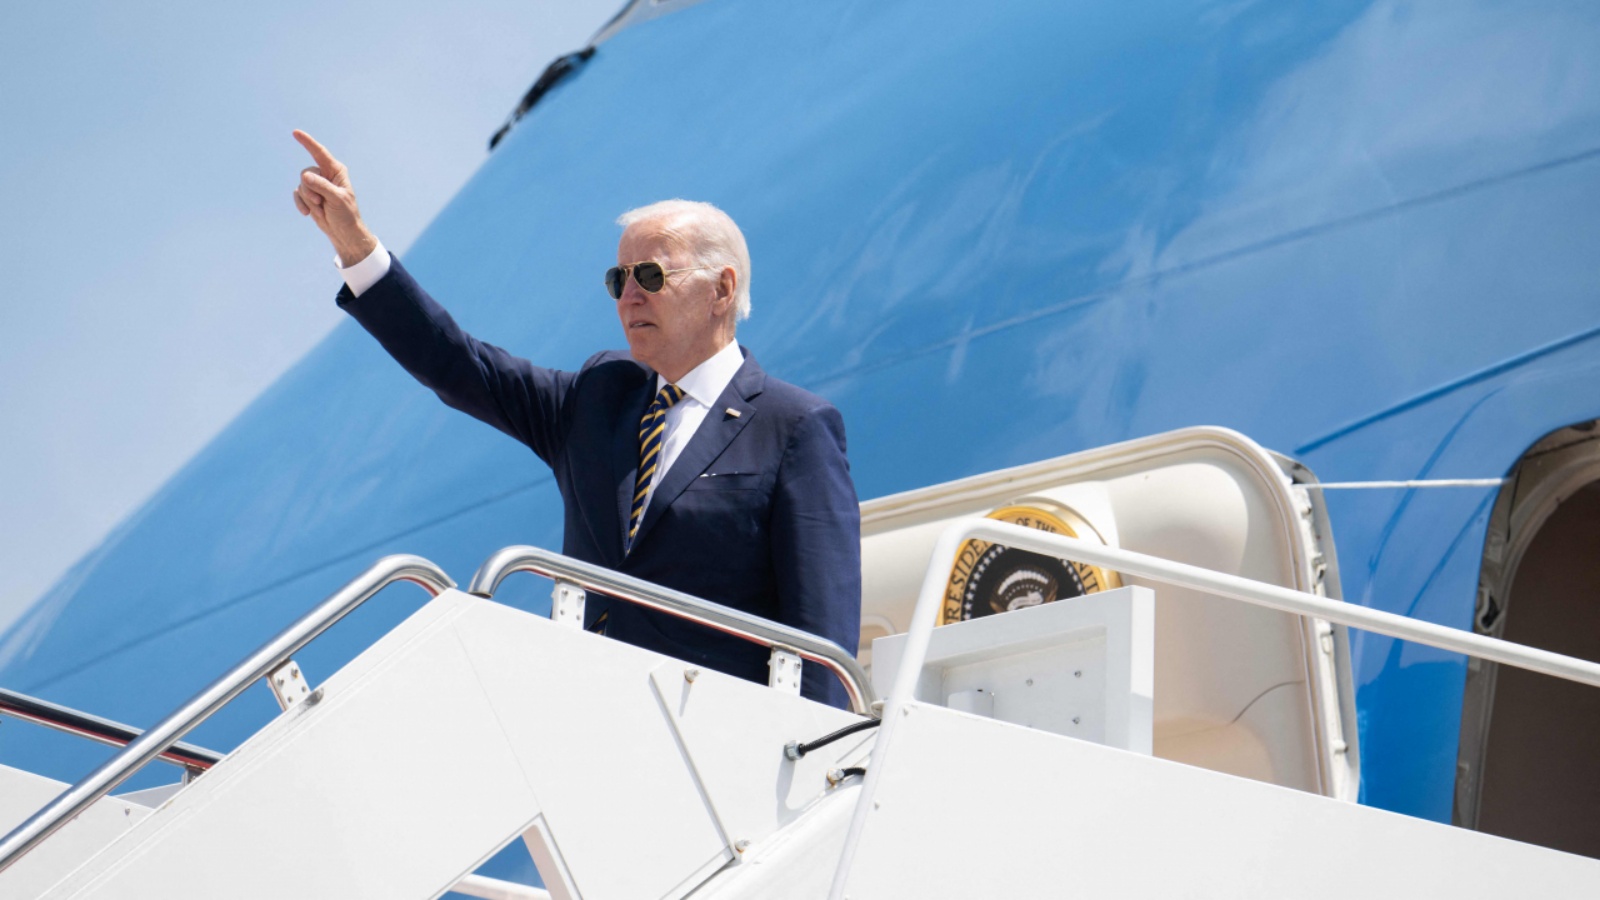 الرئيس الأميركي جو بايدن يصعد على متن طائرة الرئاسة قبل مغادرته قاعدة أندروز المشتركة في ماريلاند، الخميس 19 مايو 2022، أثناء سفره إلى كوريا الجنوبية واليابان، في أول رحلة له إلى آسيا كرئيس.